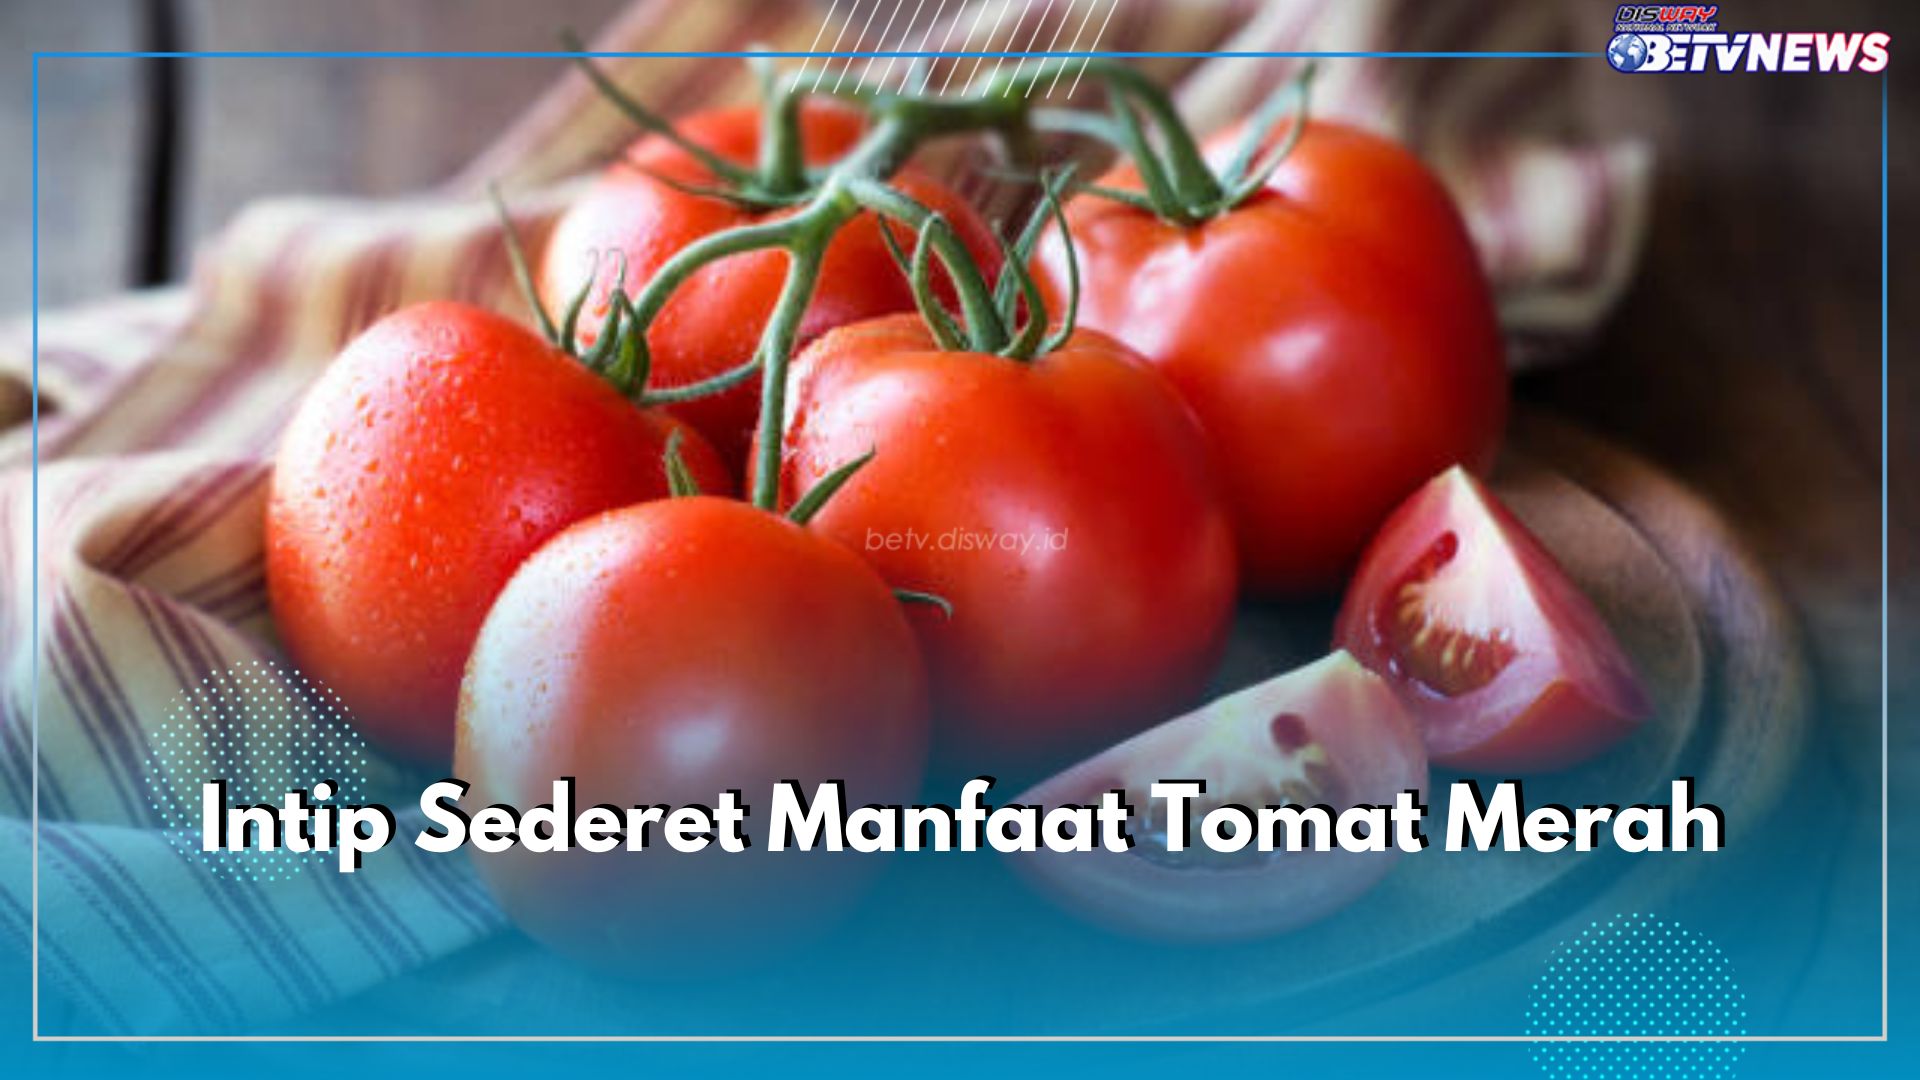 Intip Sederet Manfaat Tomat Merah, Kandungannya Ampuh Mencegah Beragam Masalah Kesehatan